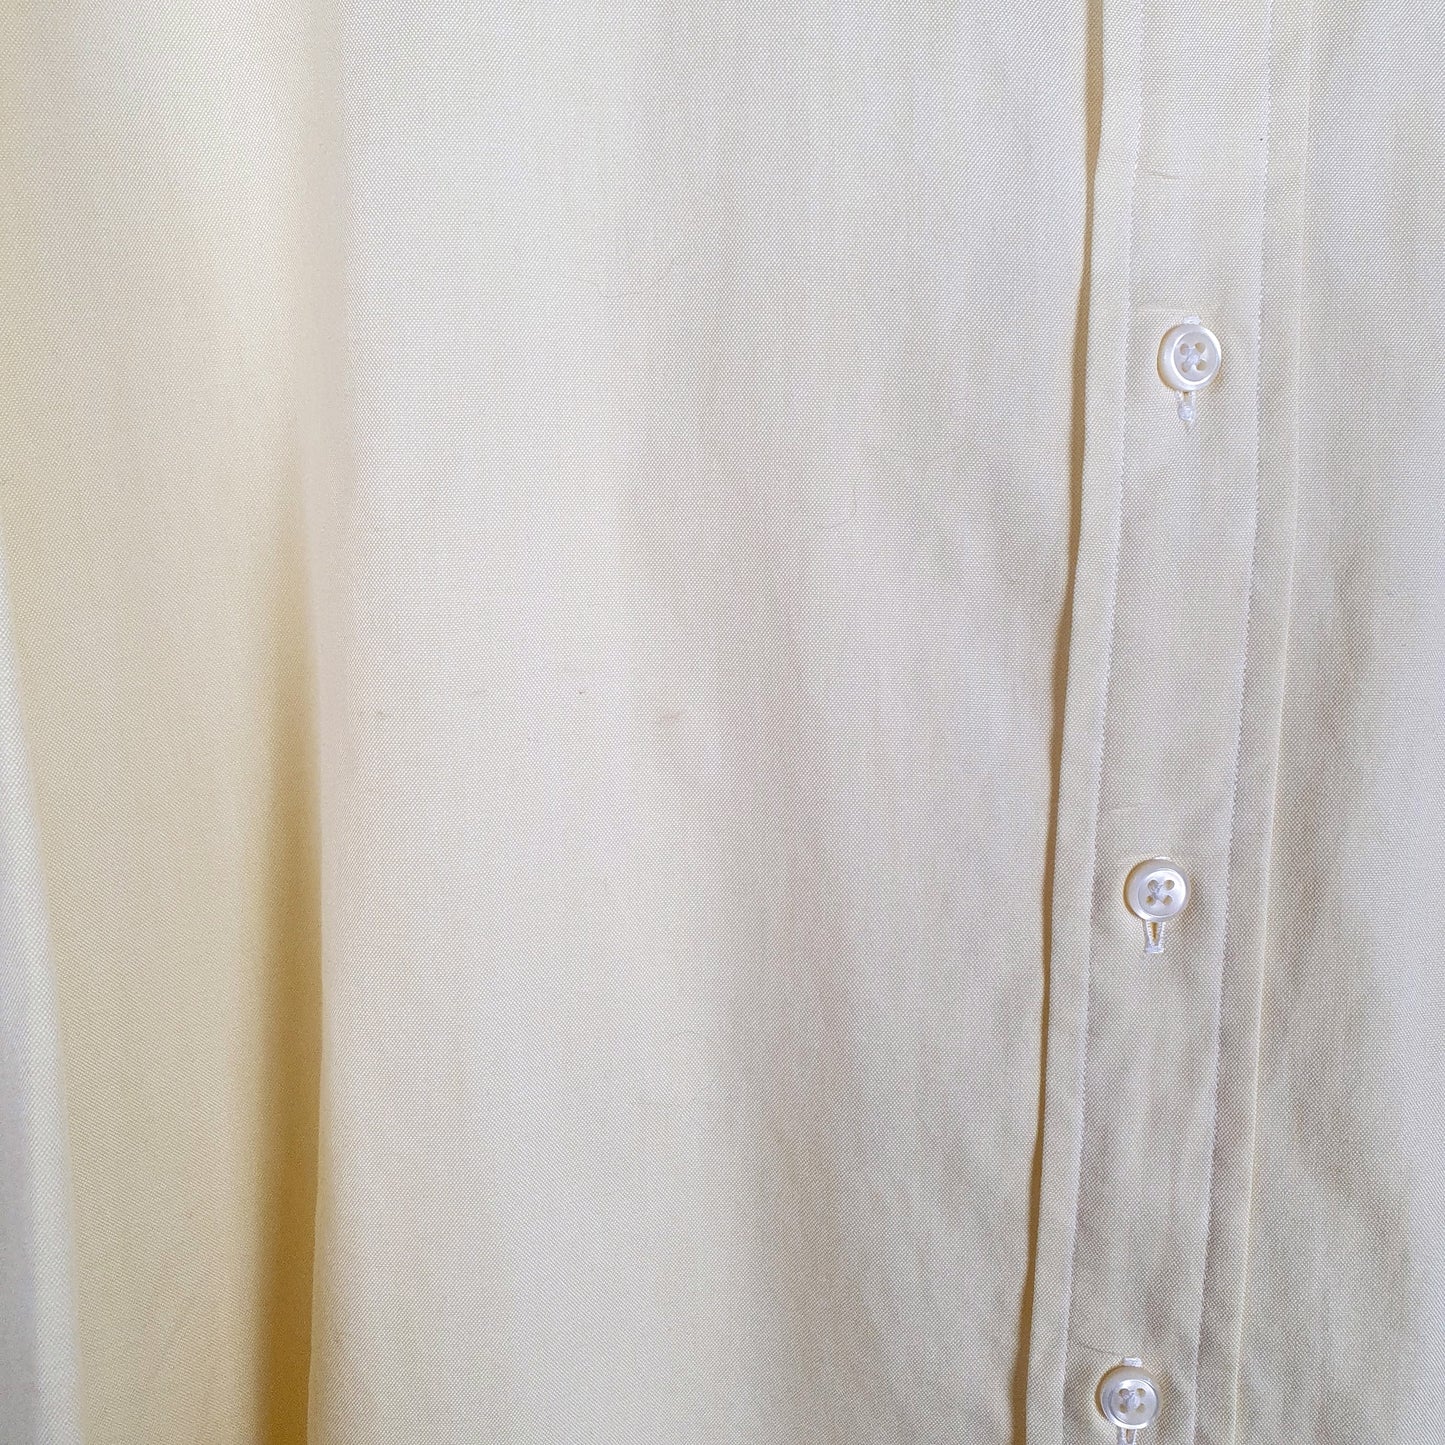 Polo Ralph Lauren Long Sleeve Regular Fit Shirt